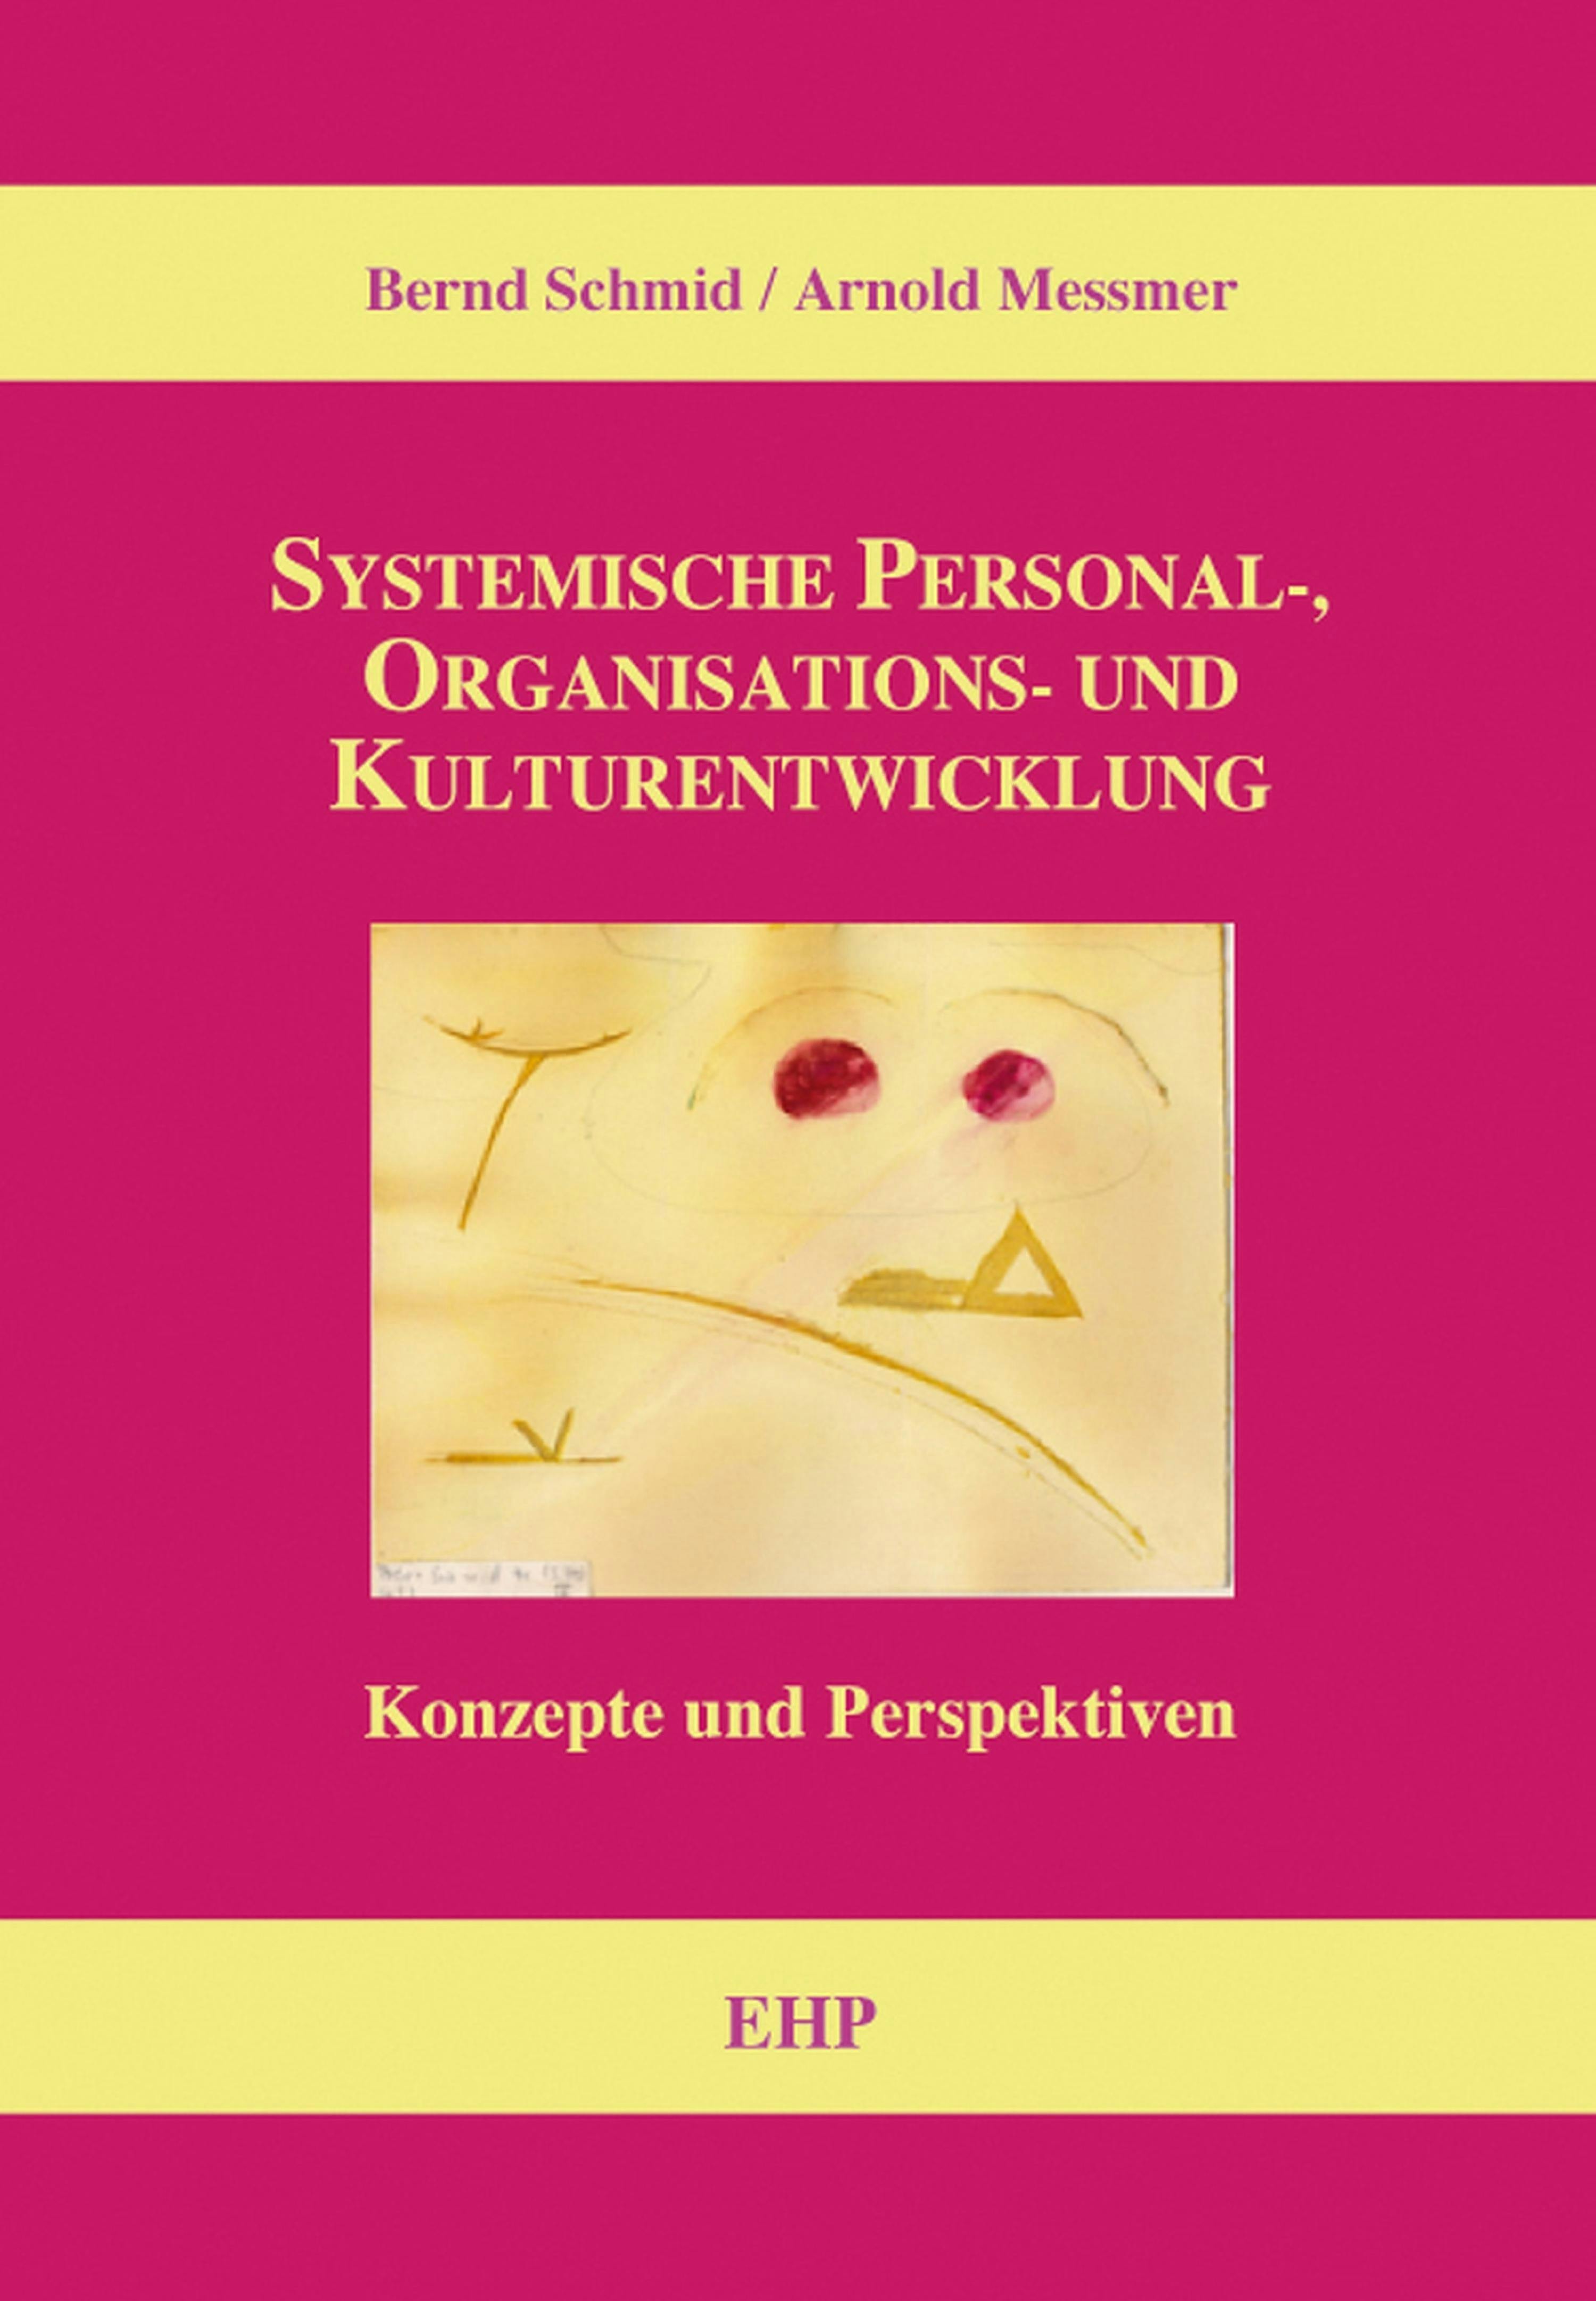 Systemische Personal-, Organisations- und Kulturentwicklung: Konzepte und Perspektiven - Arnold Messmer, Bernd Schmid, Ingeborg Weidner